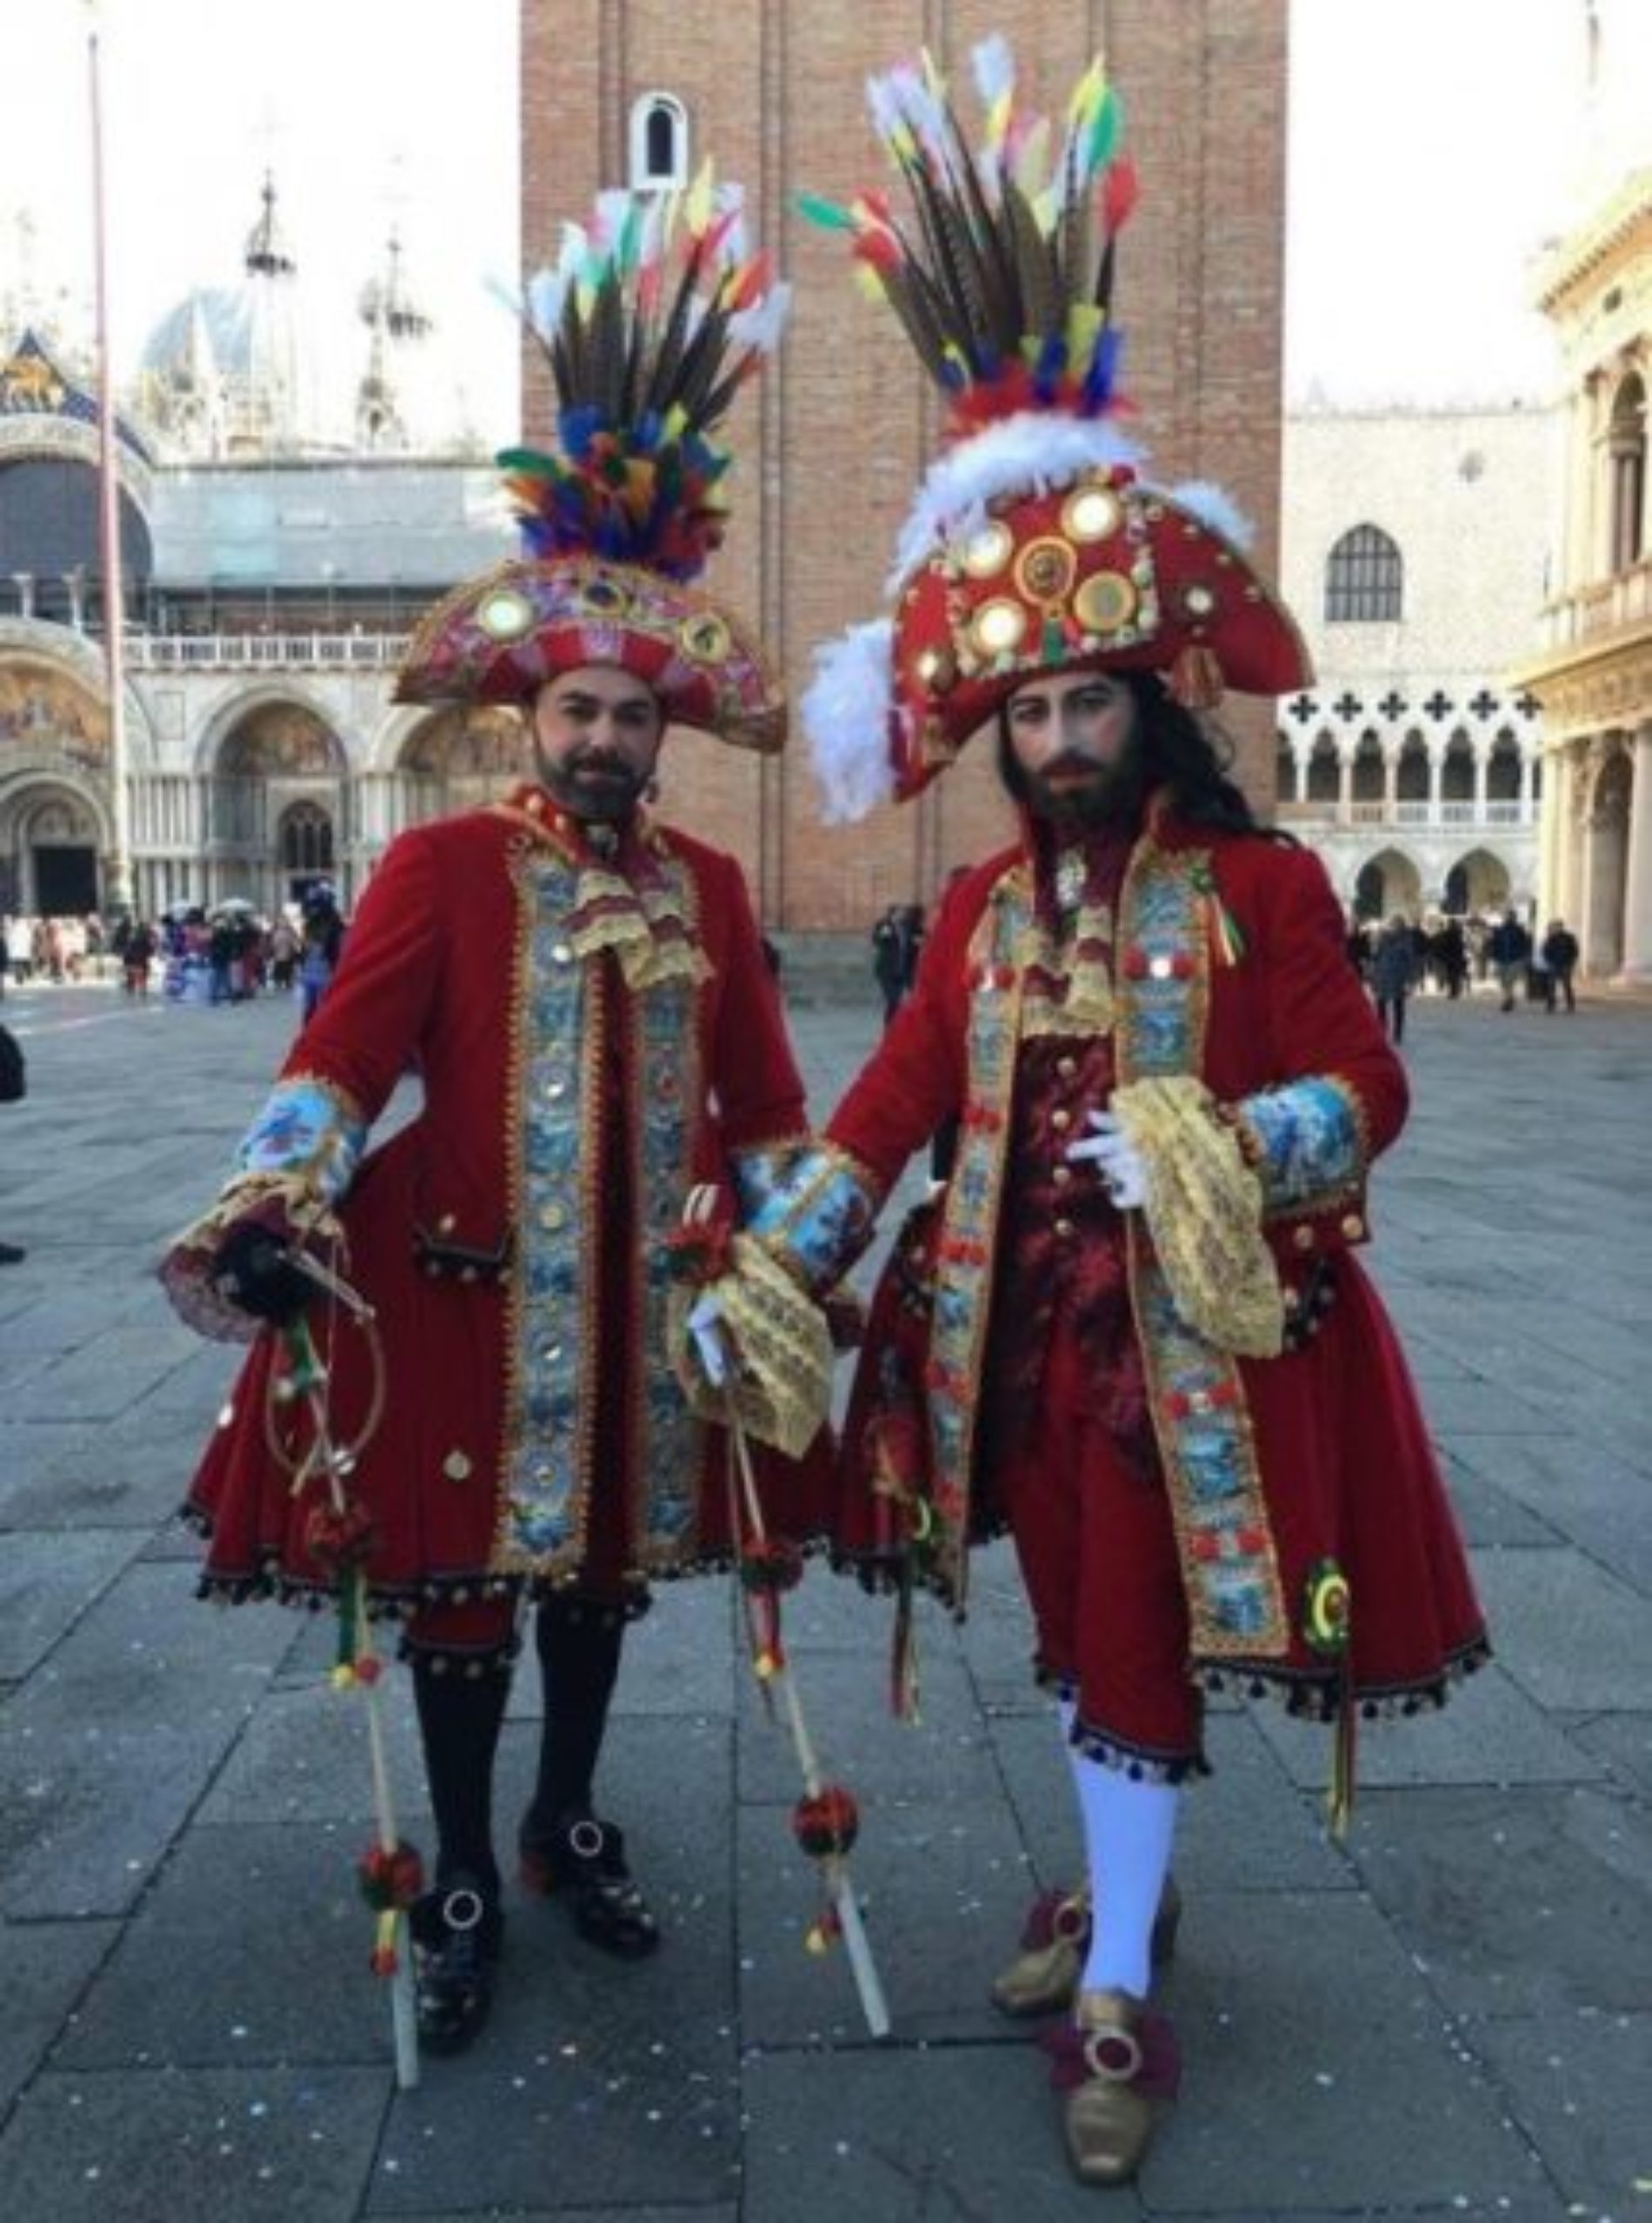 Al carnevale di Venezia vincono con “La Maschera più a tema” due siciliani